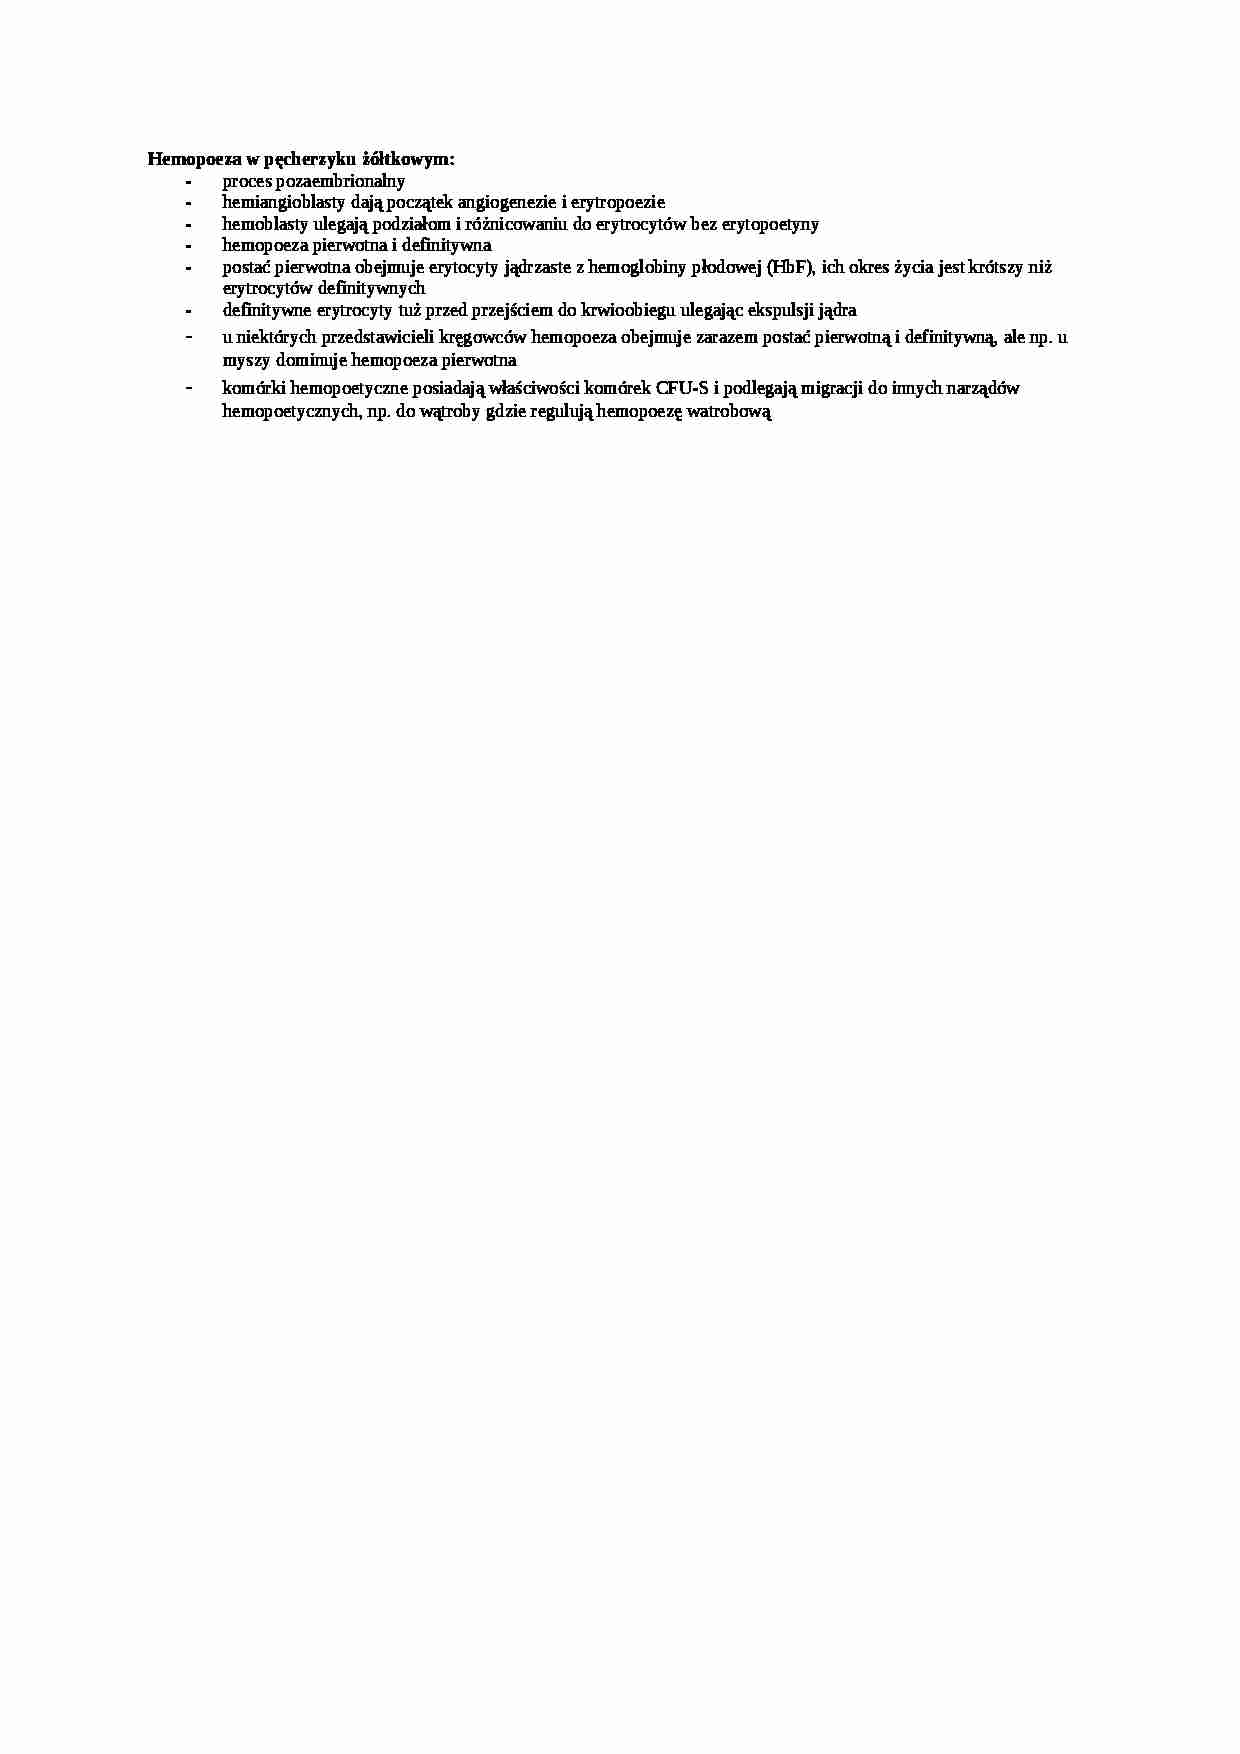 Hemopoeza w pęcherzyku żółciowym - wykład, sem  IV - strona 1